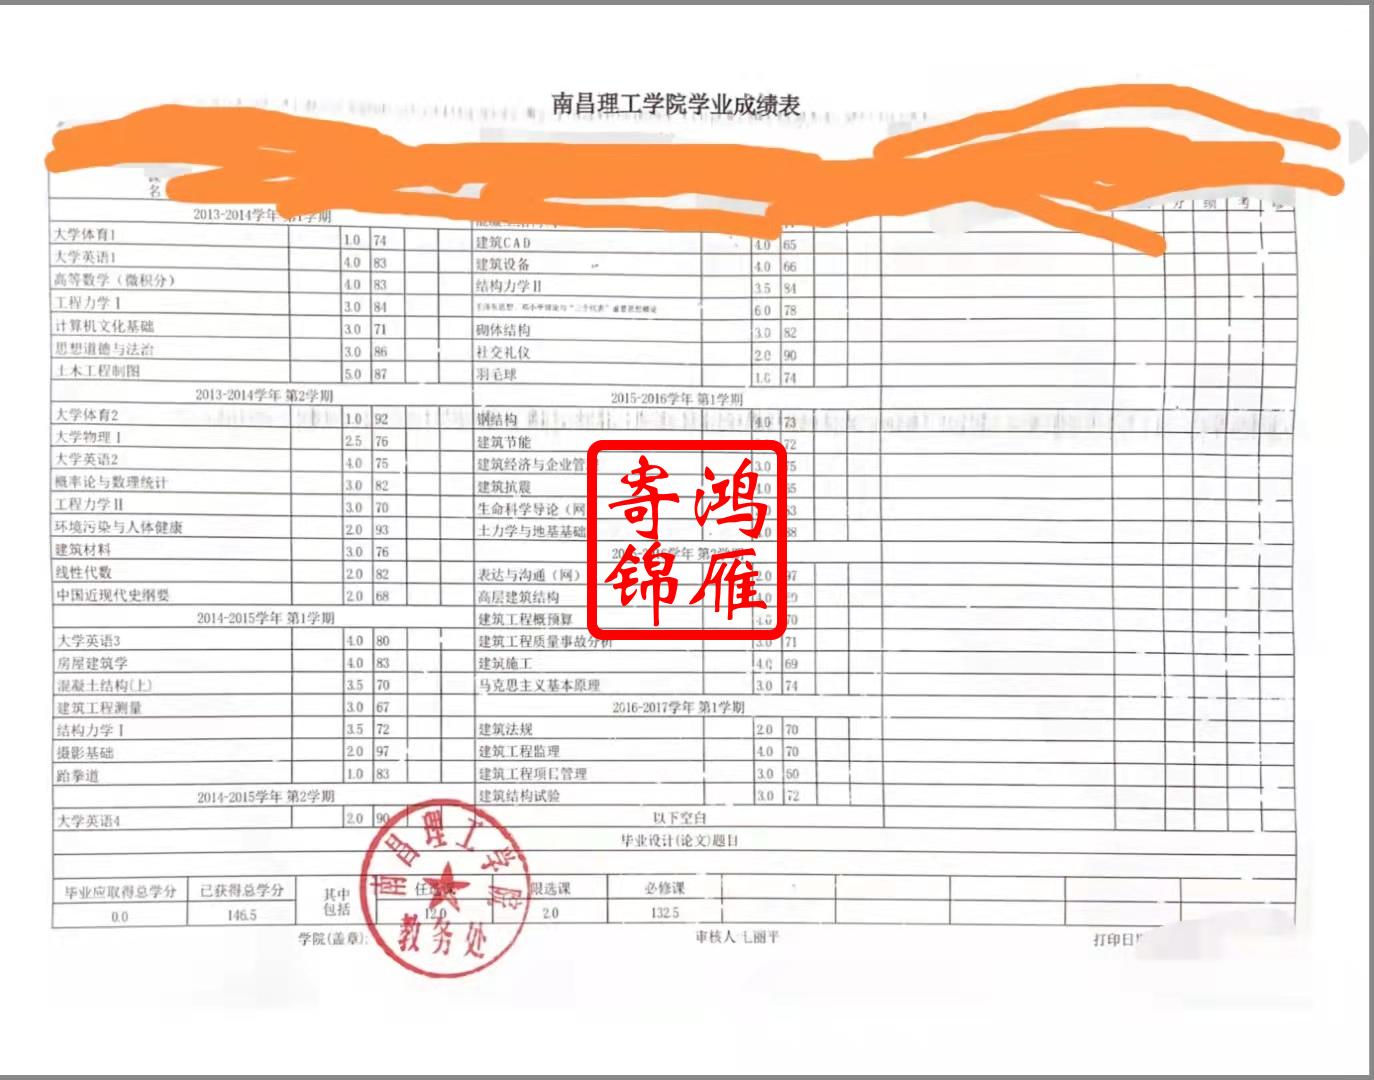 首都师范大学本专科电子成绩单、毕业证明、在读证明下载办理流程_北京高校成绩单打印流程_鸿雁寄锦